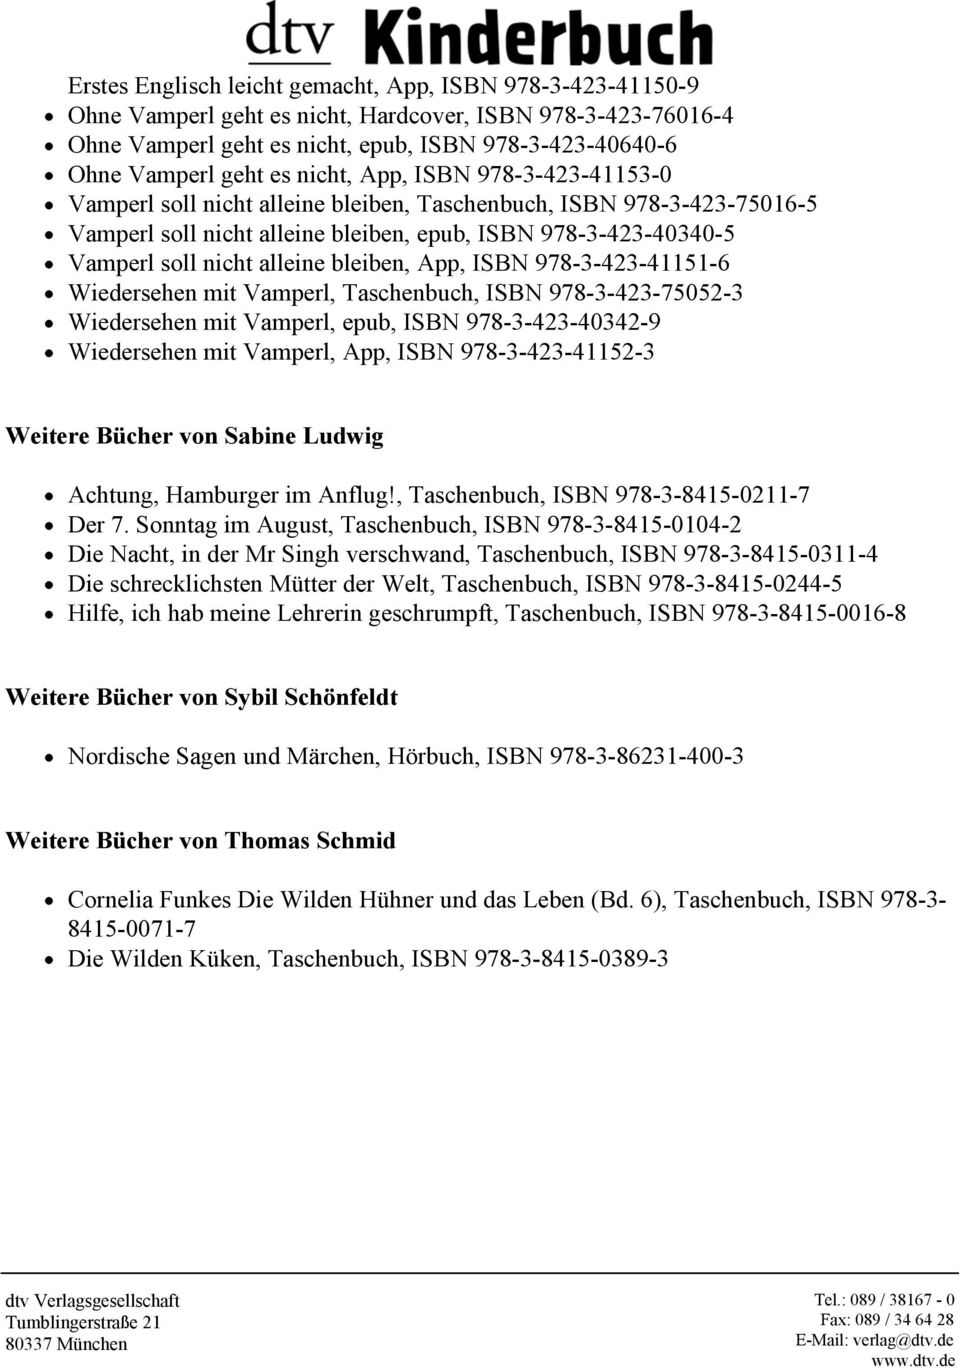 bleiben, App, ISBN 978-3-423-41151-6 Wiedersehen mit Vamperl, Taschenbuch, ISBN 978-3-423-75052-3 Wiedersehen mit Vamperl, epub, ISBN 978-3-423-40342-9 Wiedersehen mit Vamperl, App, ISBN